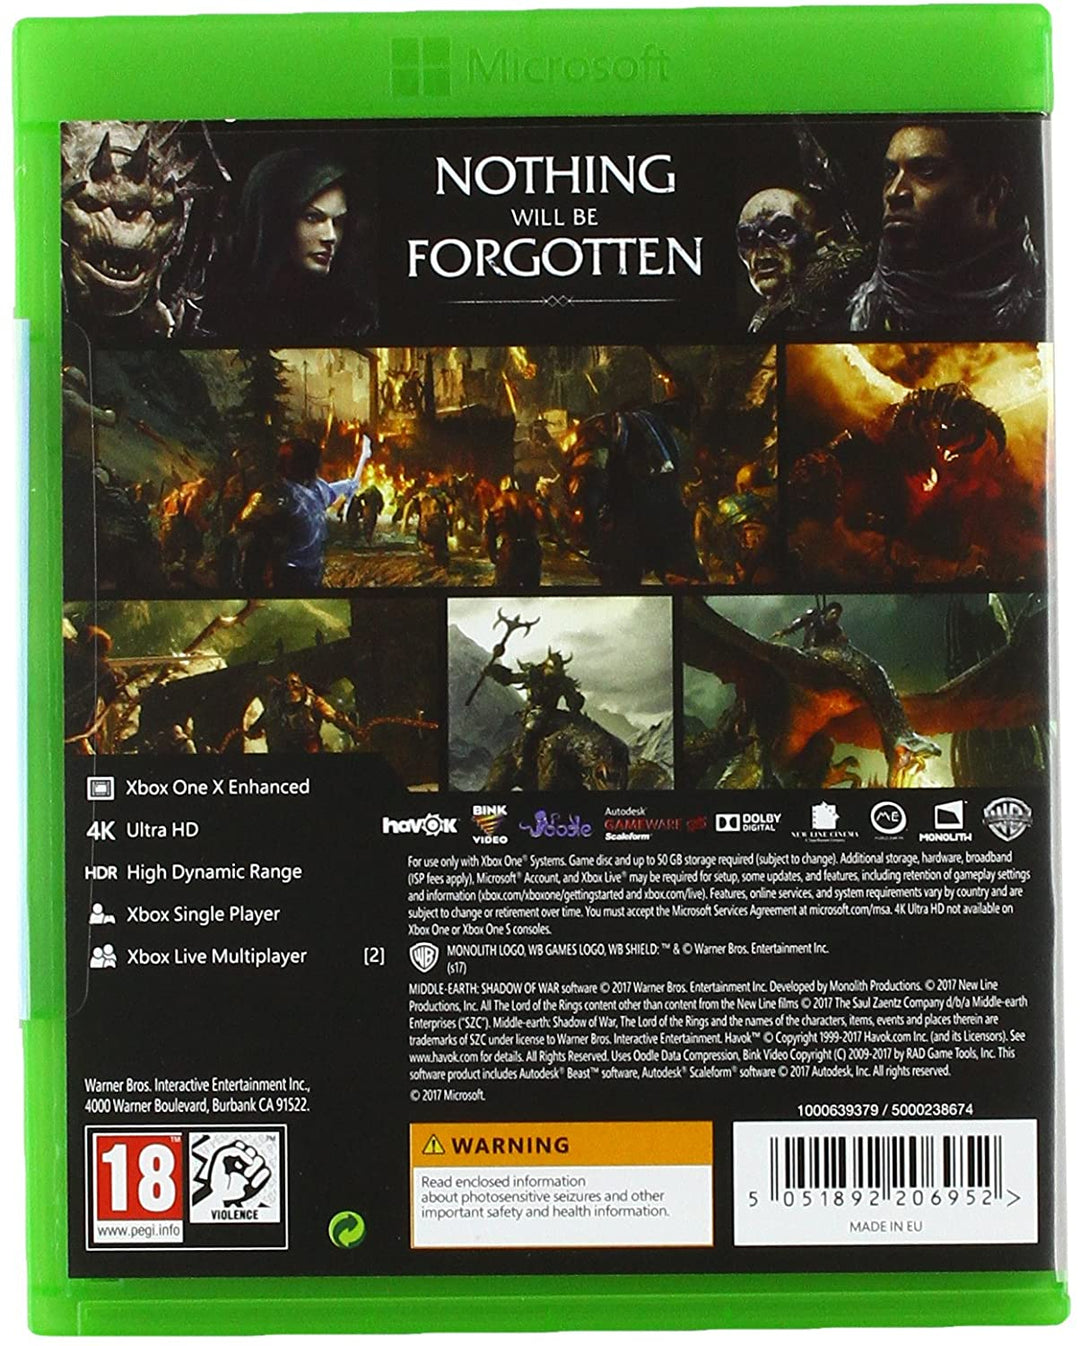 L&#39;ombra della guerra nella Terra di Mezzo (Xbox One)